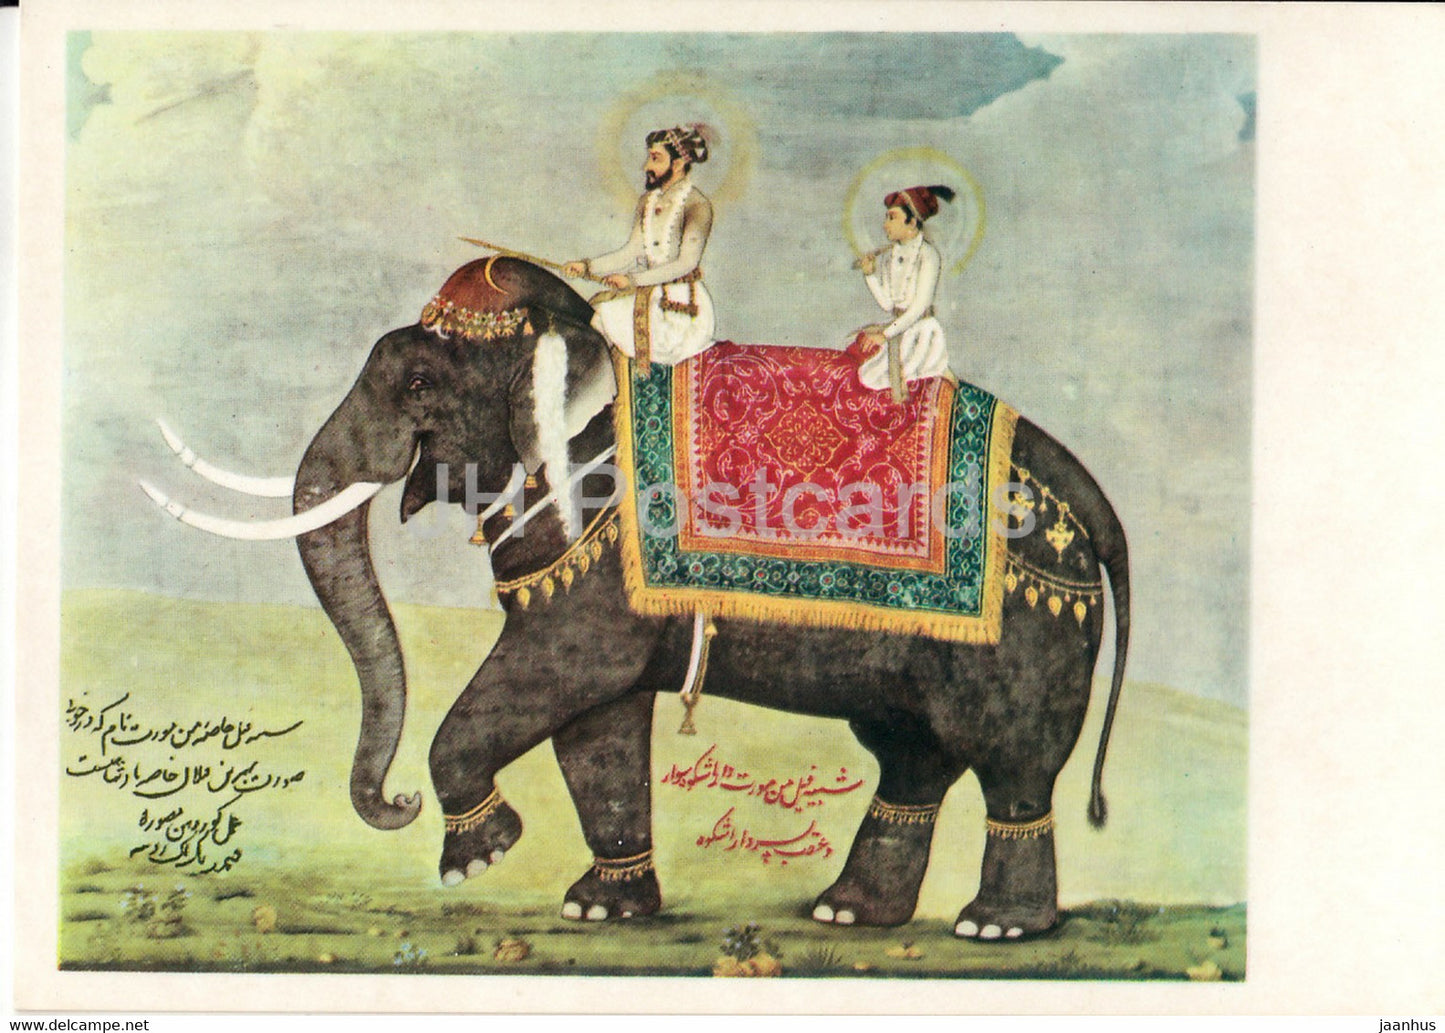 Indische Miniatur - Prinz Dara Schikoh und sein Sohn - elephant - 786 - Indian art - Germany DDR - unused - JH Postcards